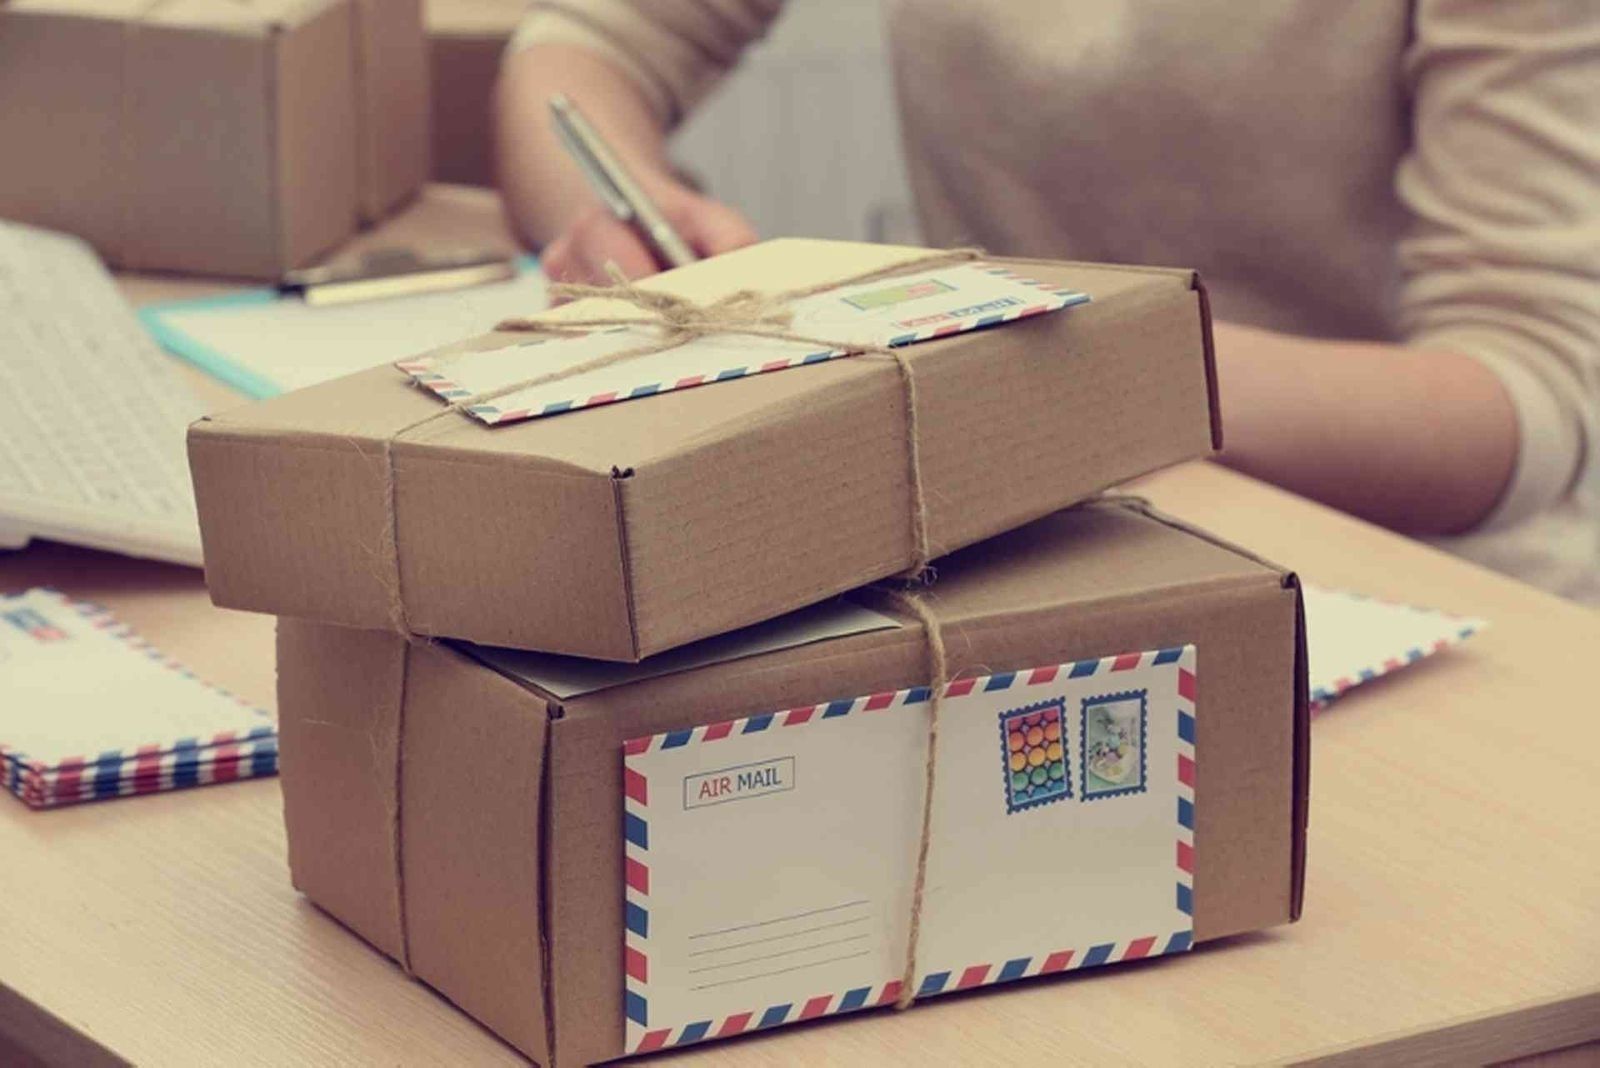 Олон улсын шуудангаар мансууруулах бодис хүлээн авсан гэх хэргийг шүүхэд шилжүүллээ